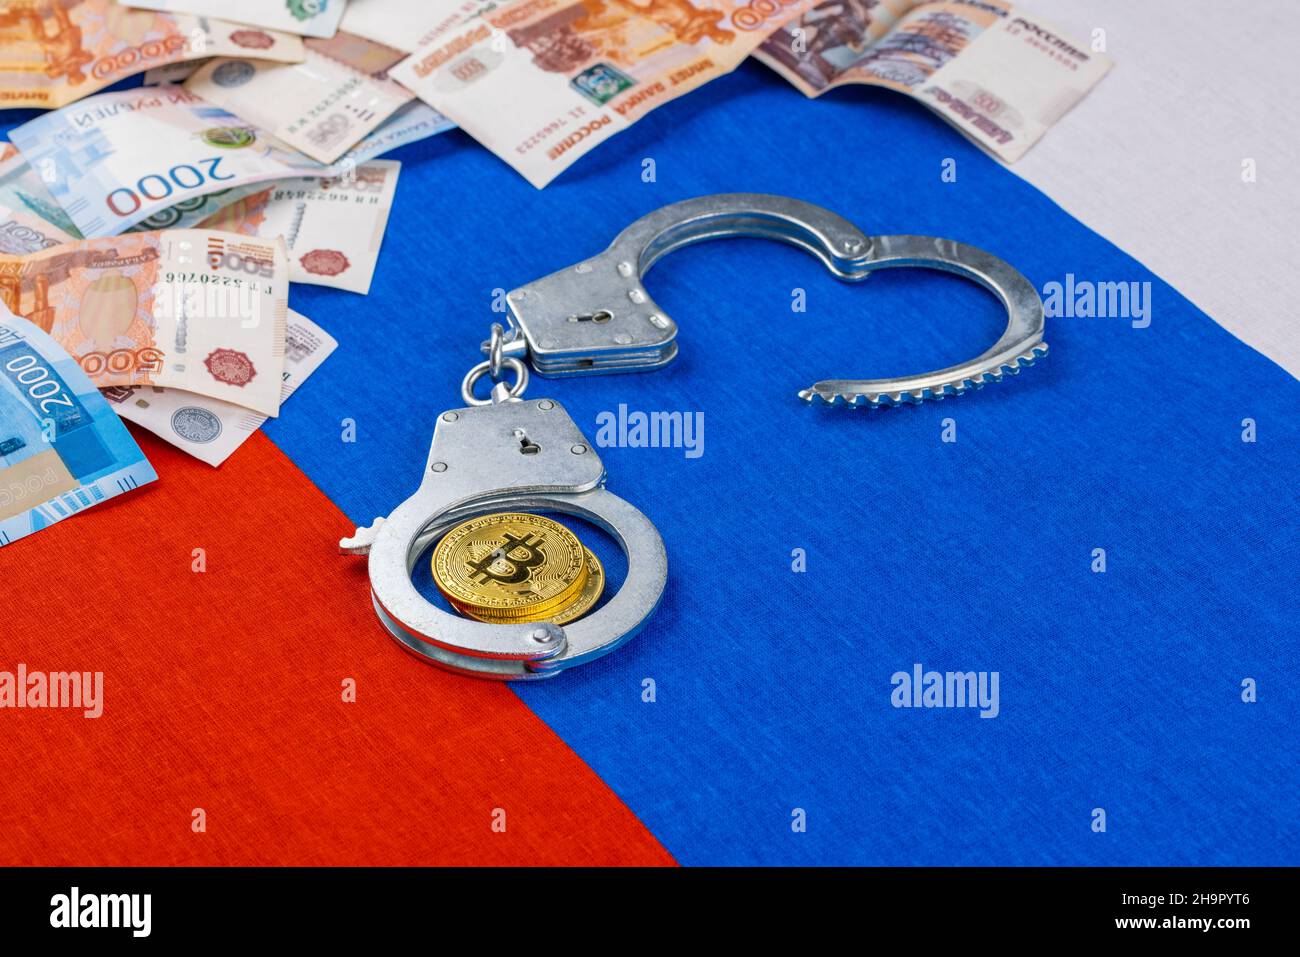 papel ruso rublos moneda y moneda de bitcoin shiner encadenado con esposas en el fondo de la bandera rusa Foto de stock